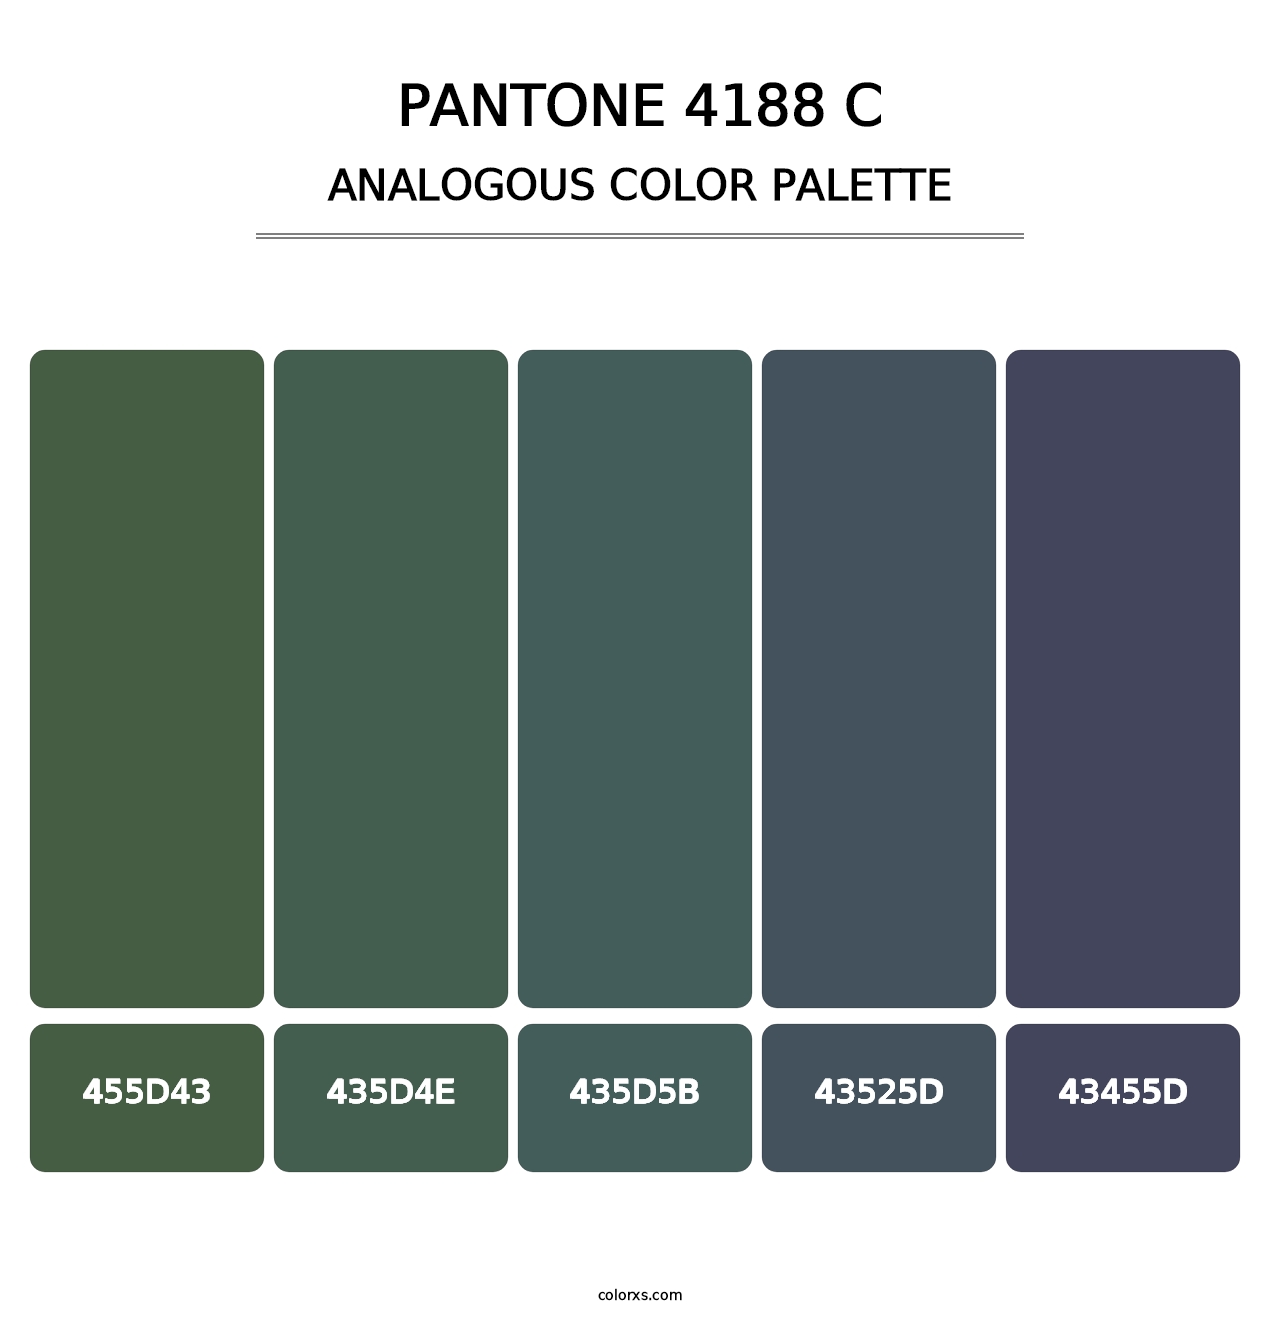 PANTONE 4188 C - Analogous Color Palette